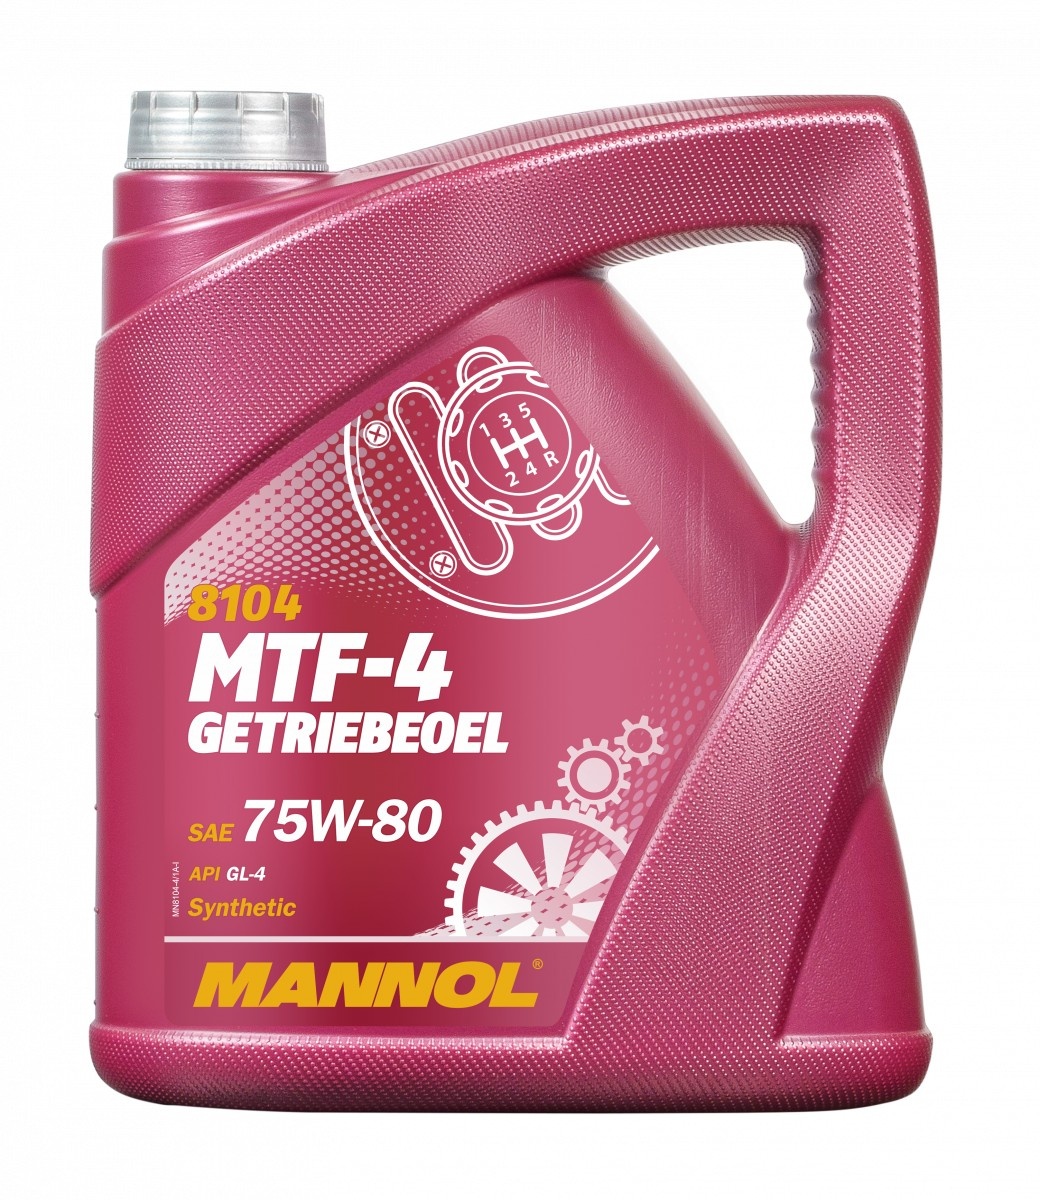 Трансмиссионное масло Mannol MTF-4 Getriebeoel 75W-80 8104 4L